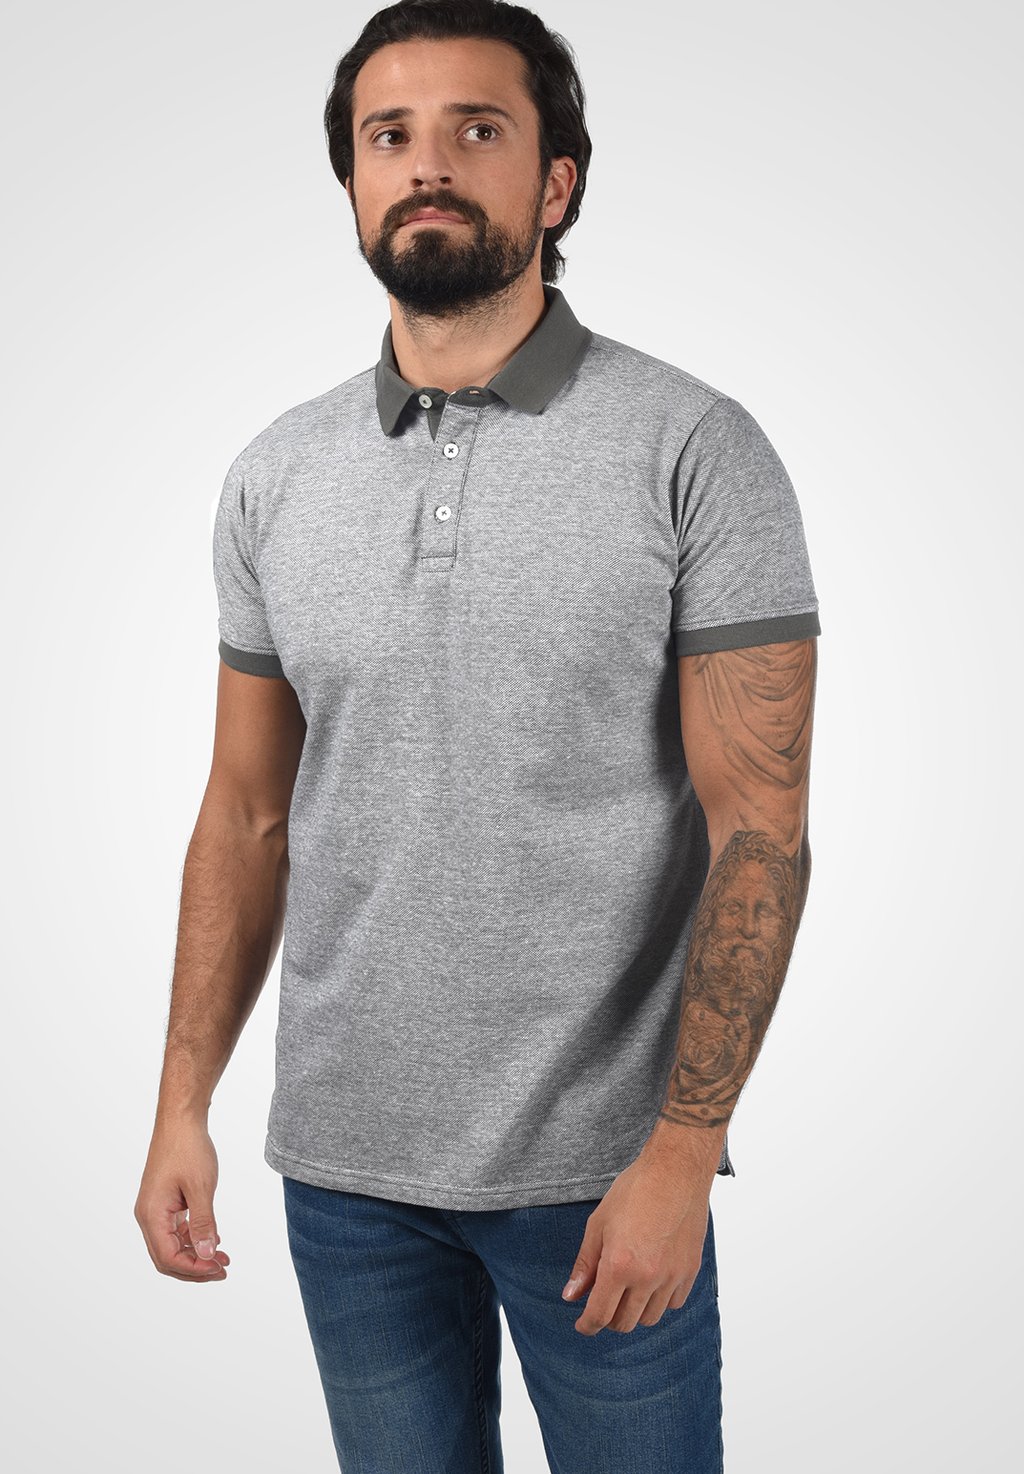 футболка с принтом original tee peak performance цвет med grey melange black Рубашка-поло PANOS Solid, цвет med grey melange